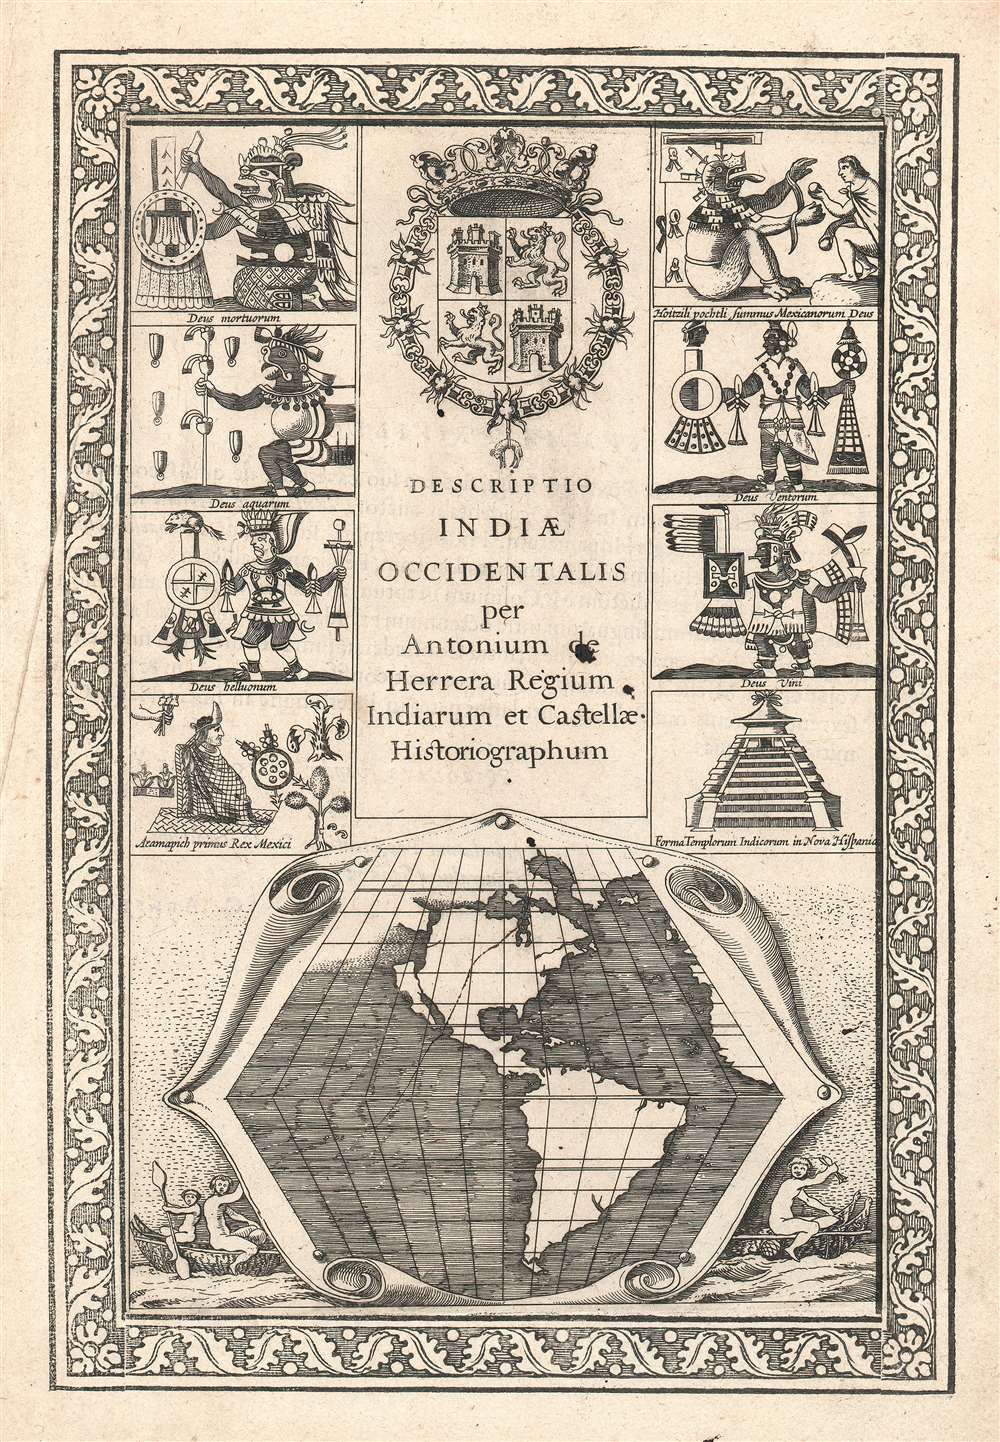 Descriptio Indiae Occidentalis per Antonium de Herrera. - Main View